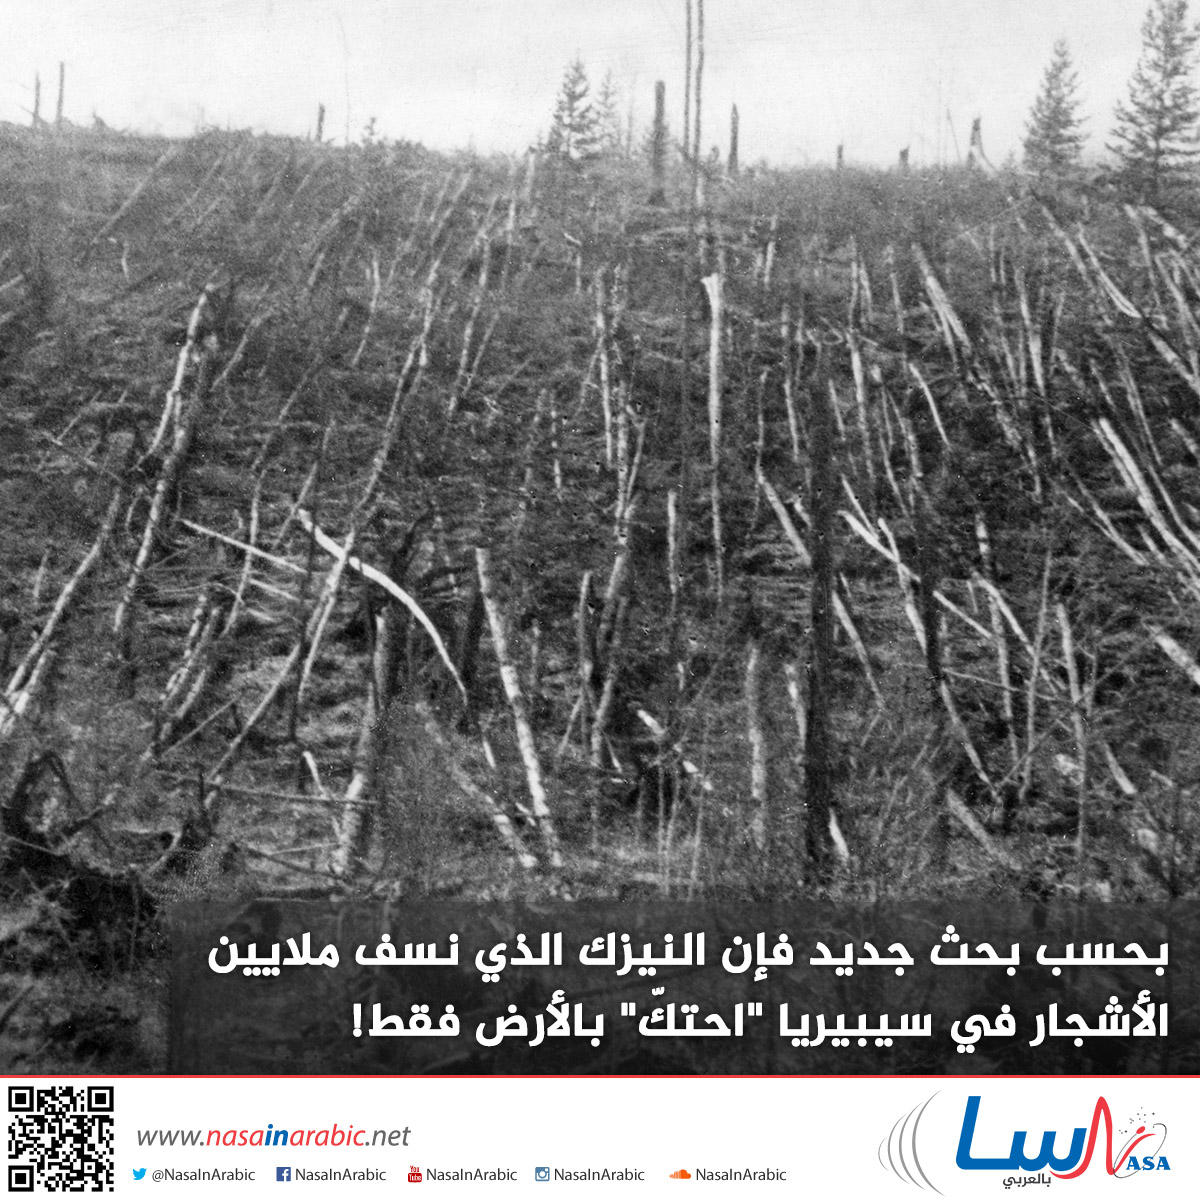 بحسب بحث جديد فإن النيزك الذي نسف ملايين الأشجار في سيبيريا “احتكّ” بالأرض فقط!